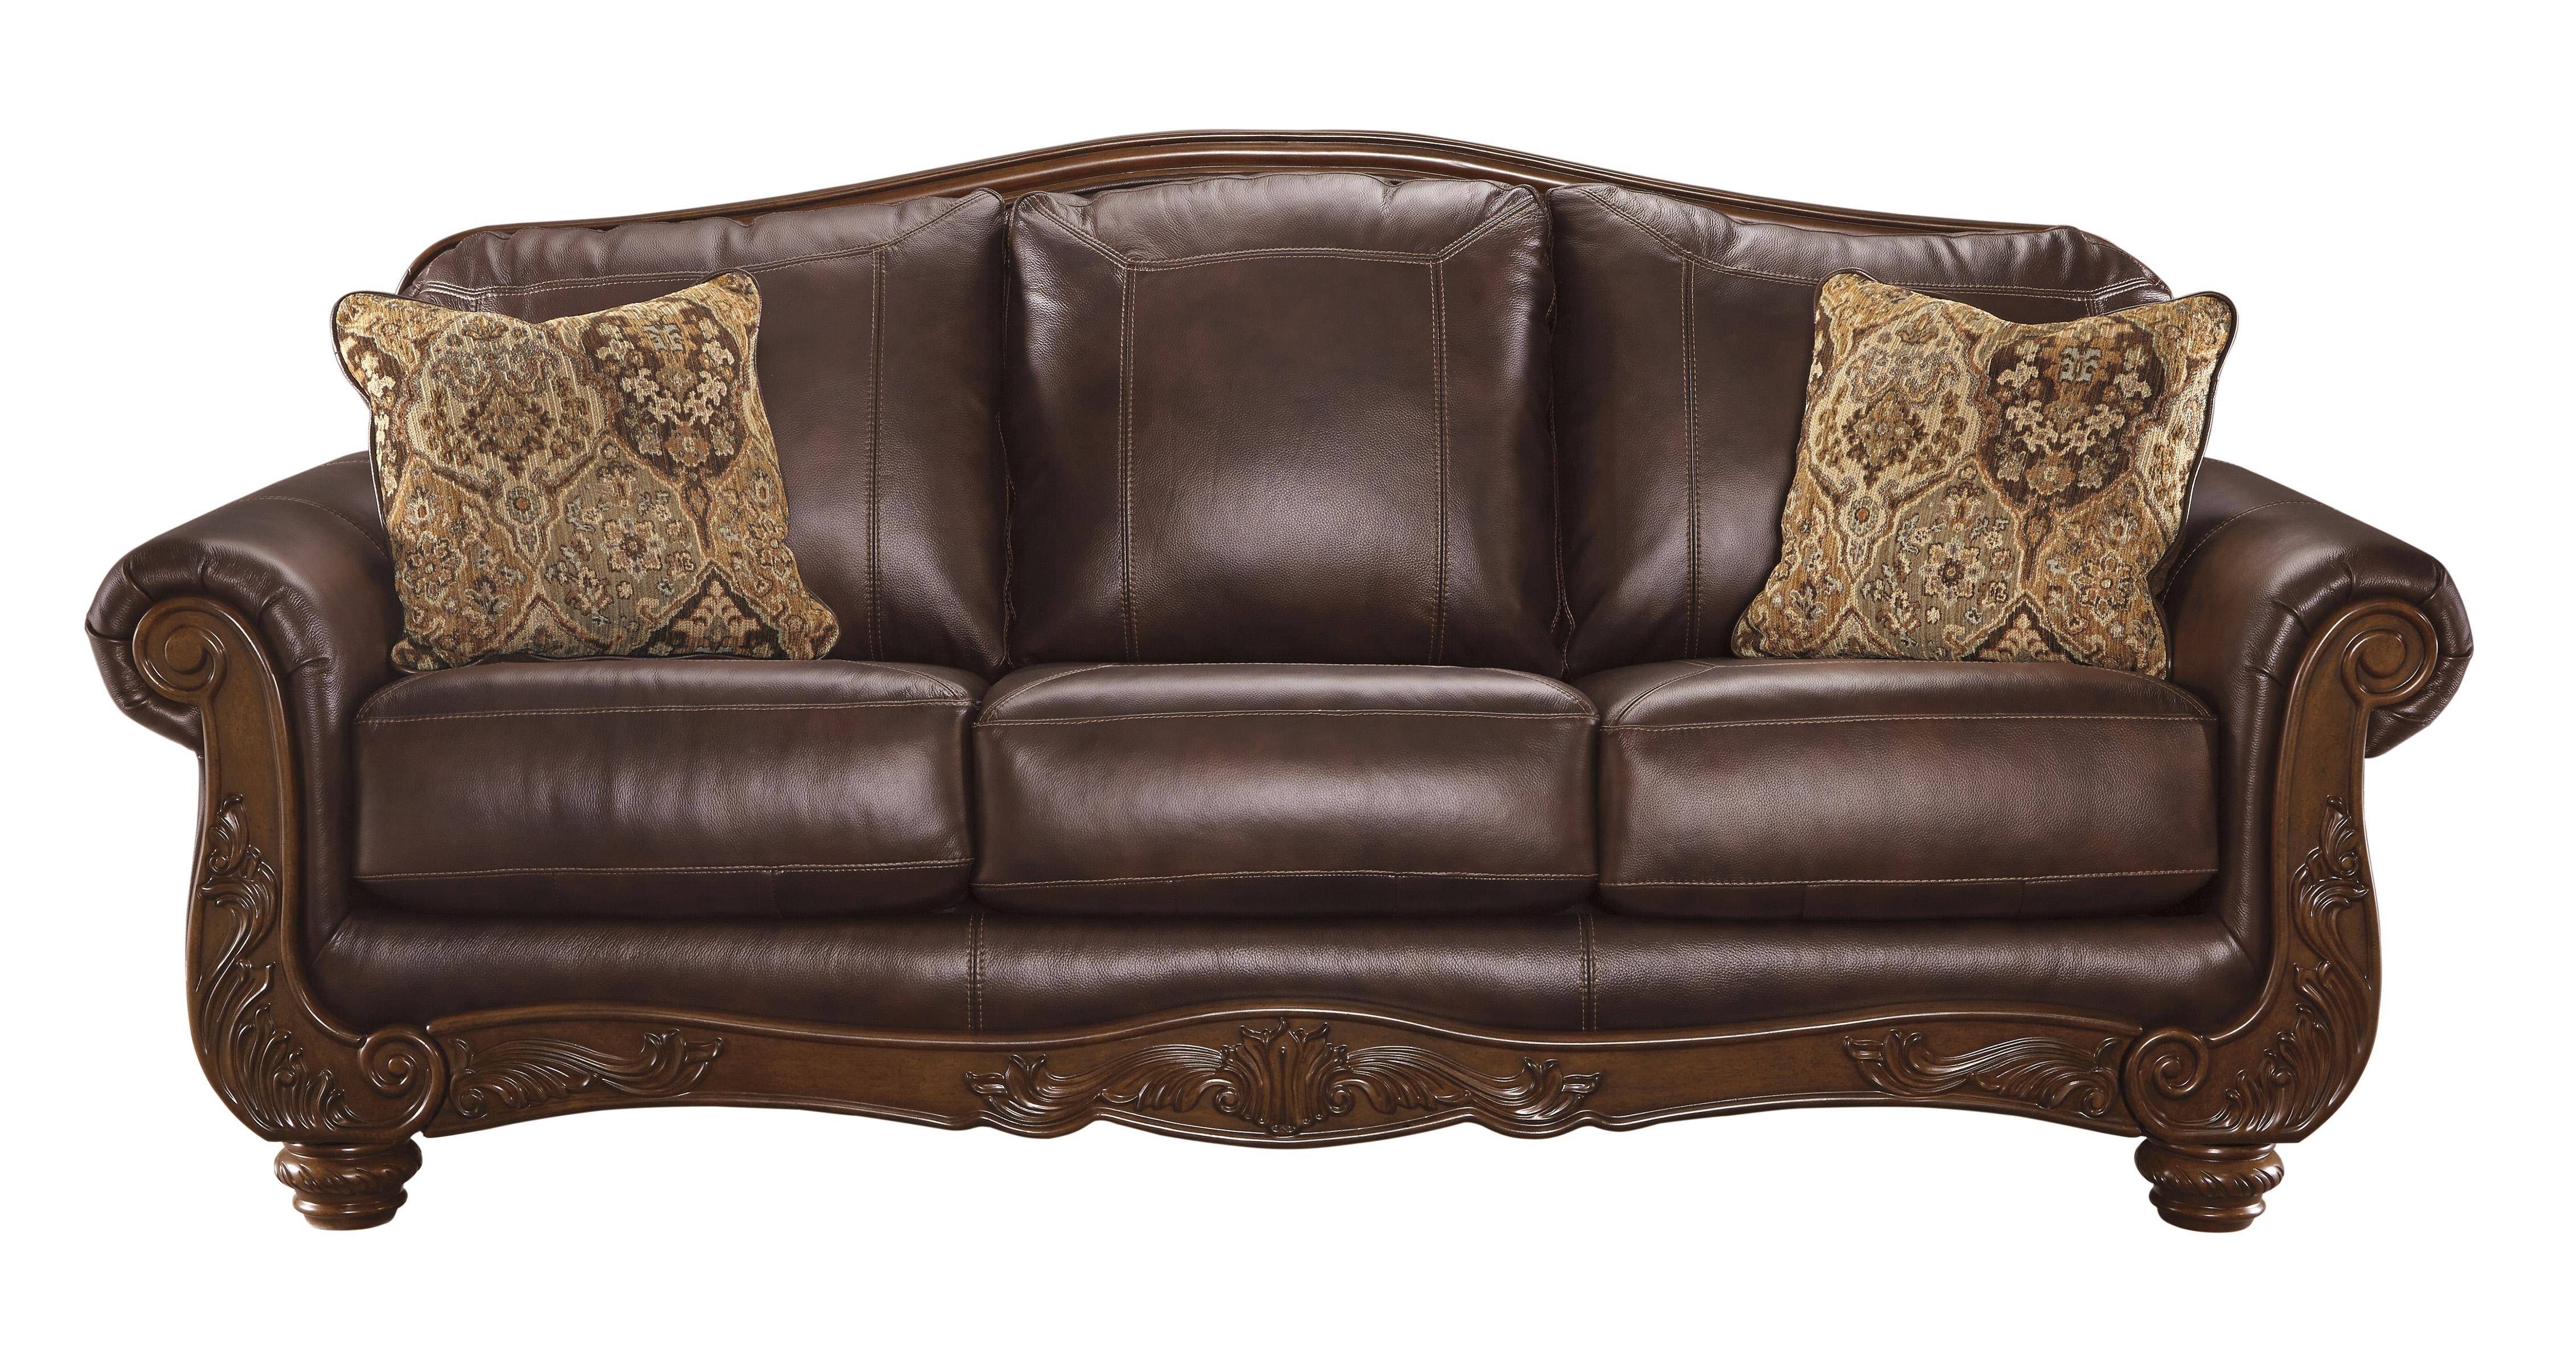 ashley furniture leather sofa 3pc set